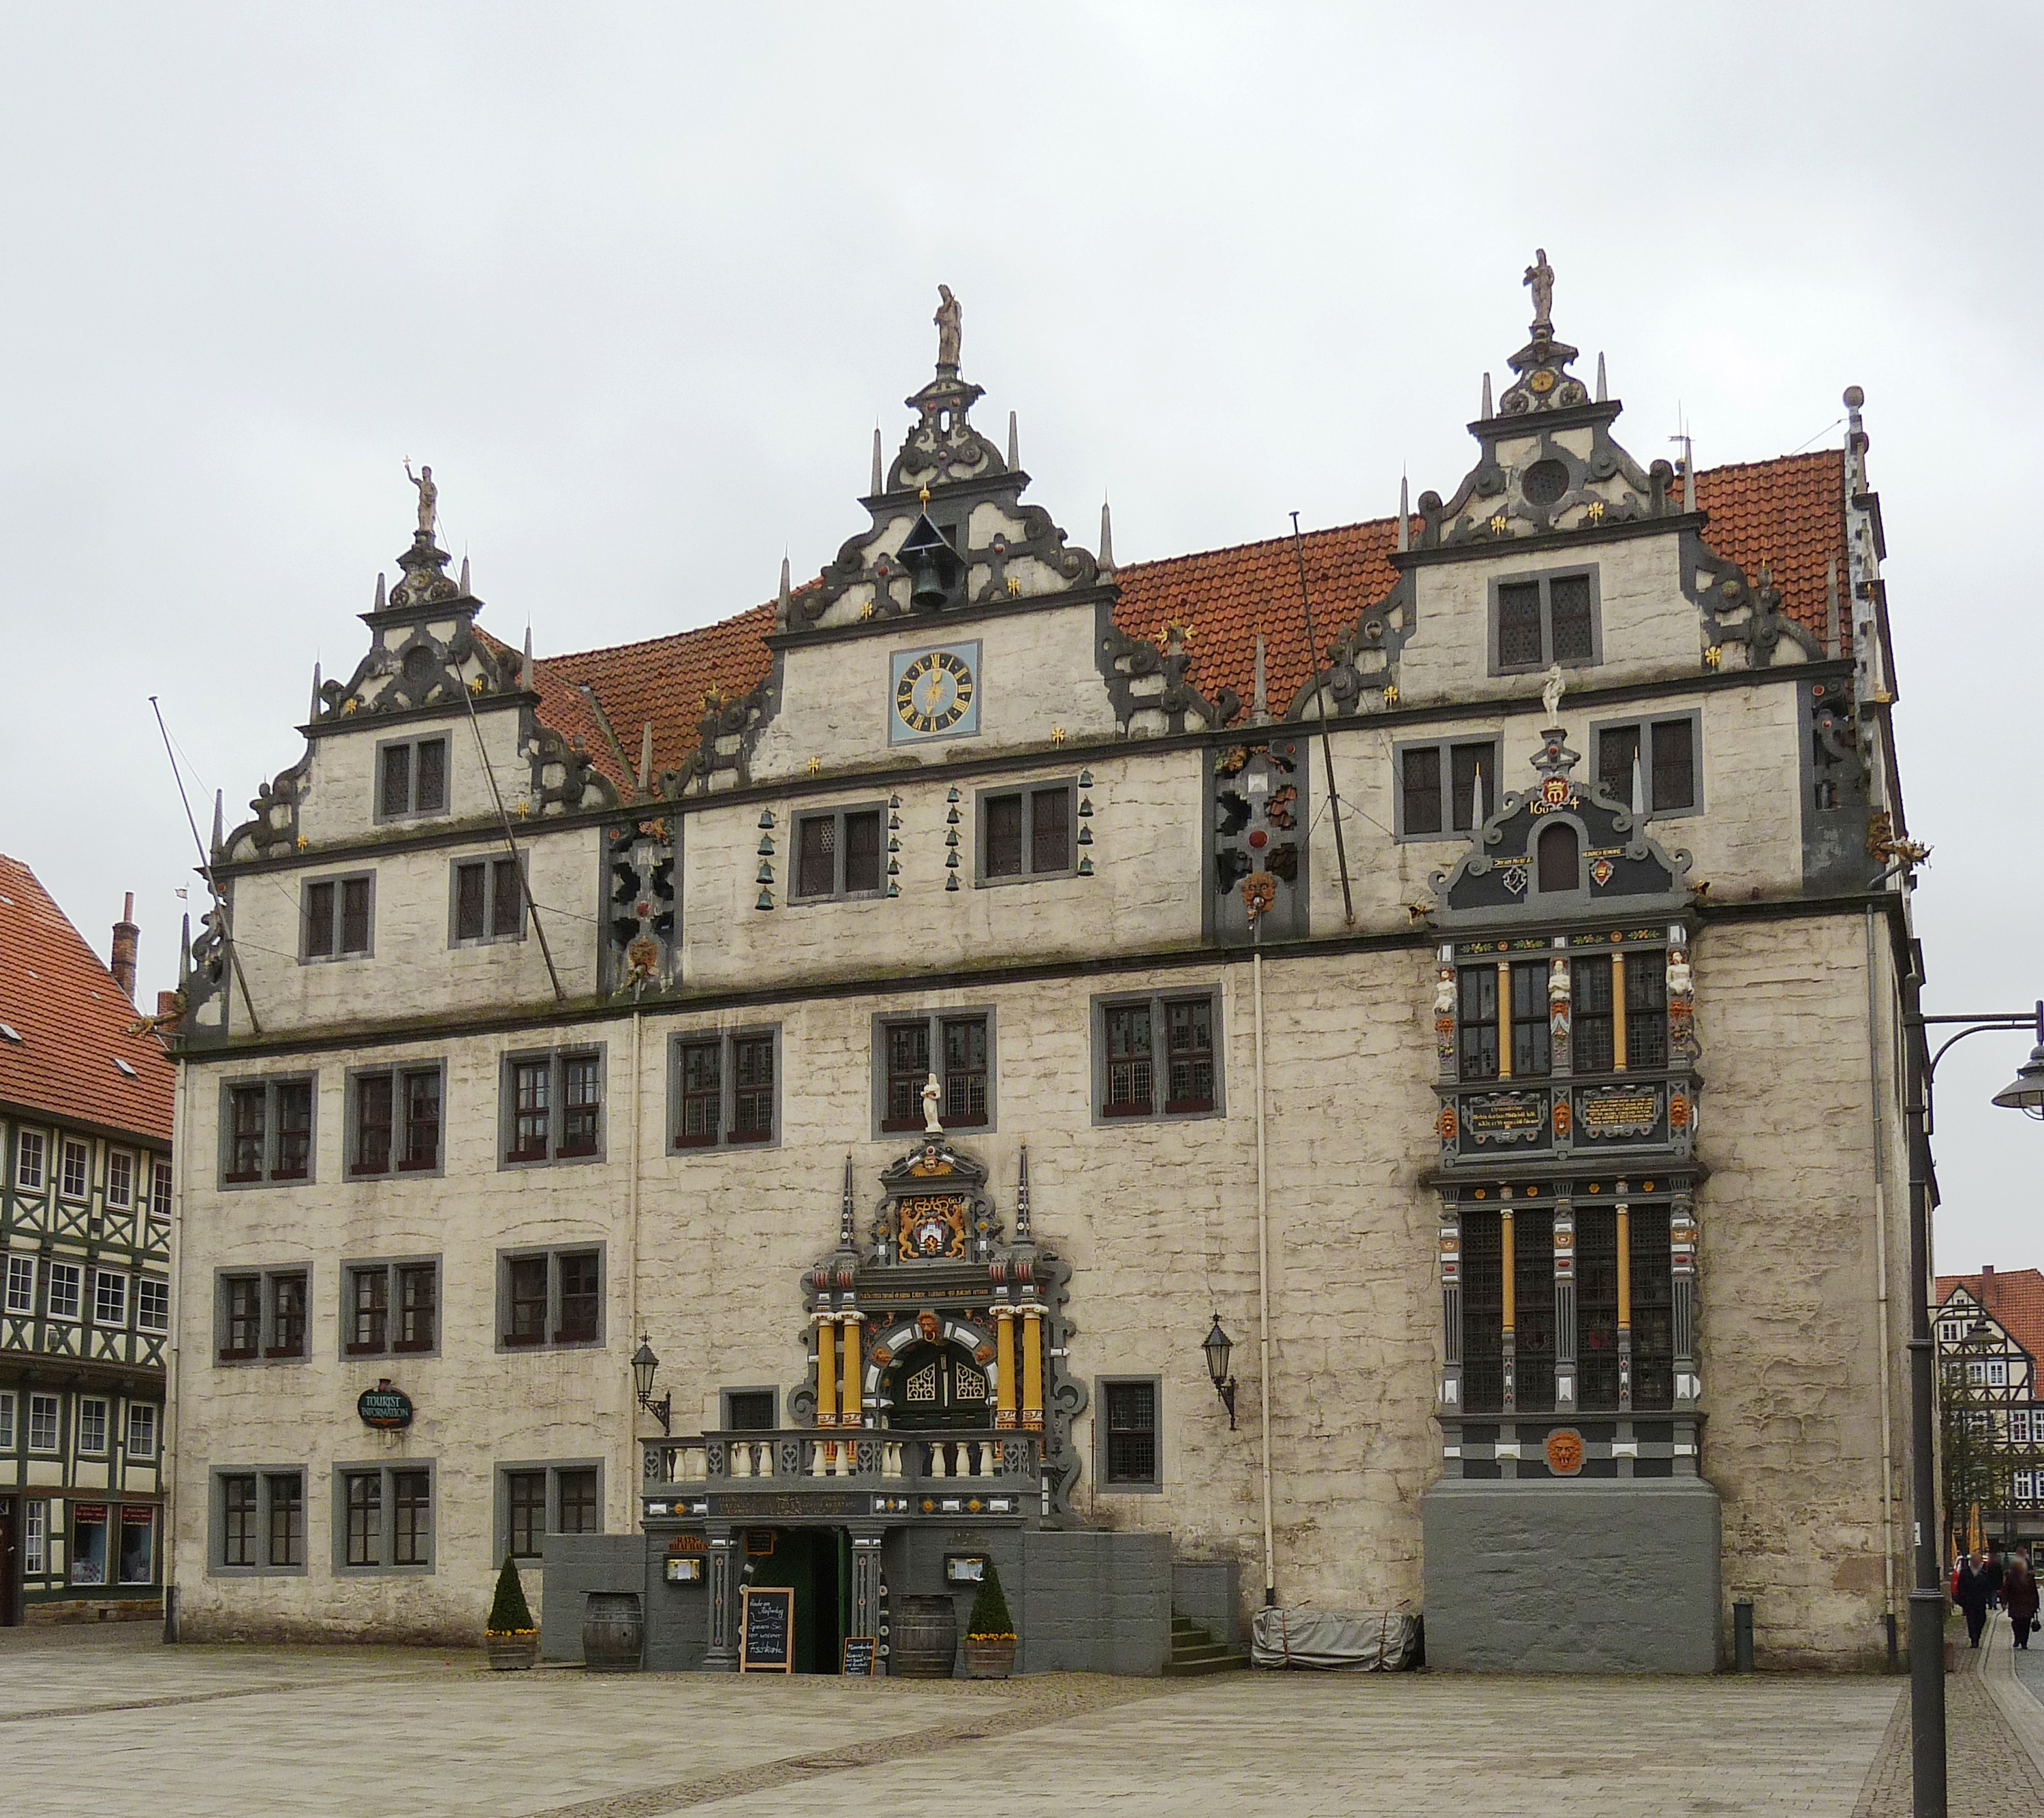 Vorderseite (Nordseite) des Renaissance-Rathauses in Hann. Münden, Südniedersachsen